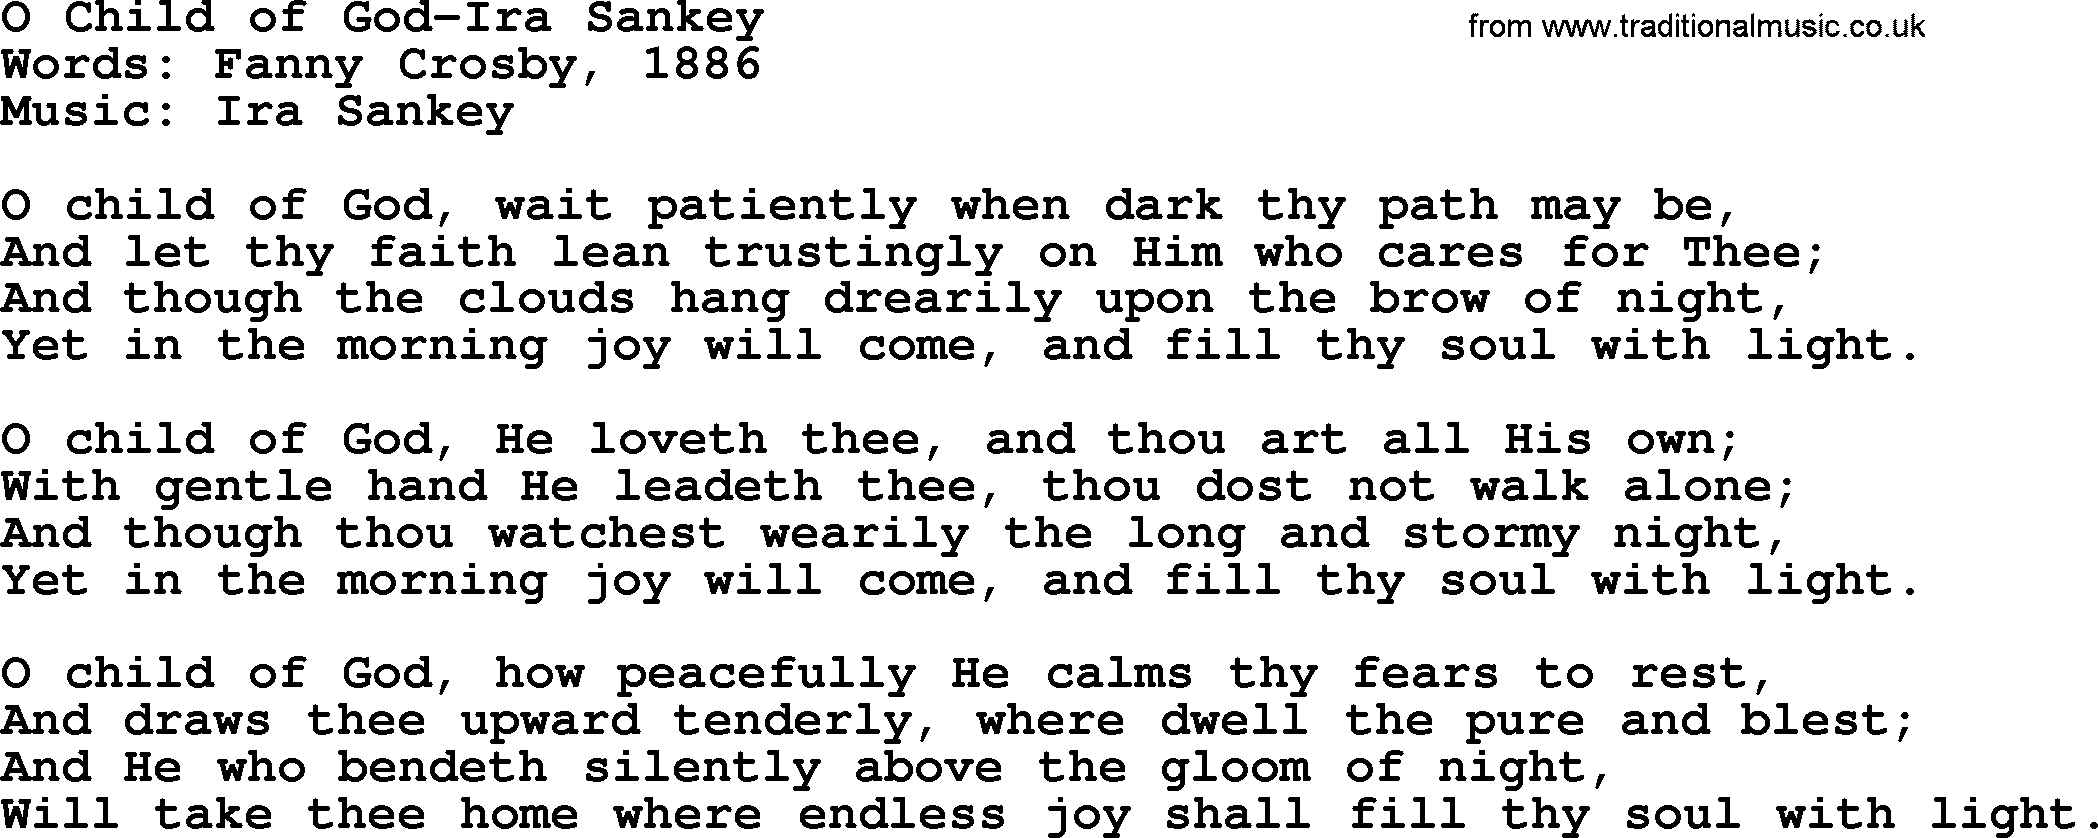 Ira Sankey hymn: O Child of God-Ira Sankey, lyrics